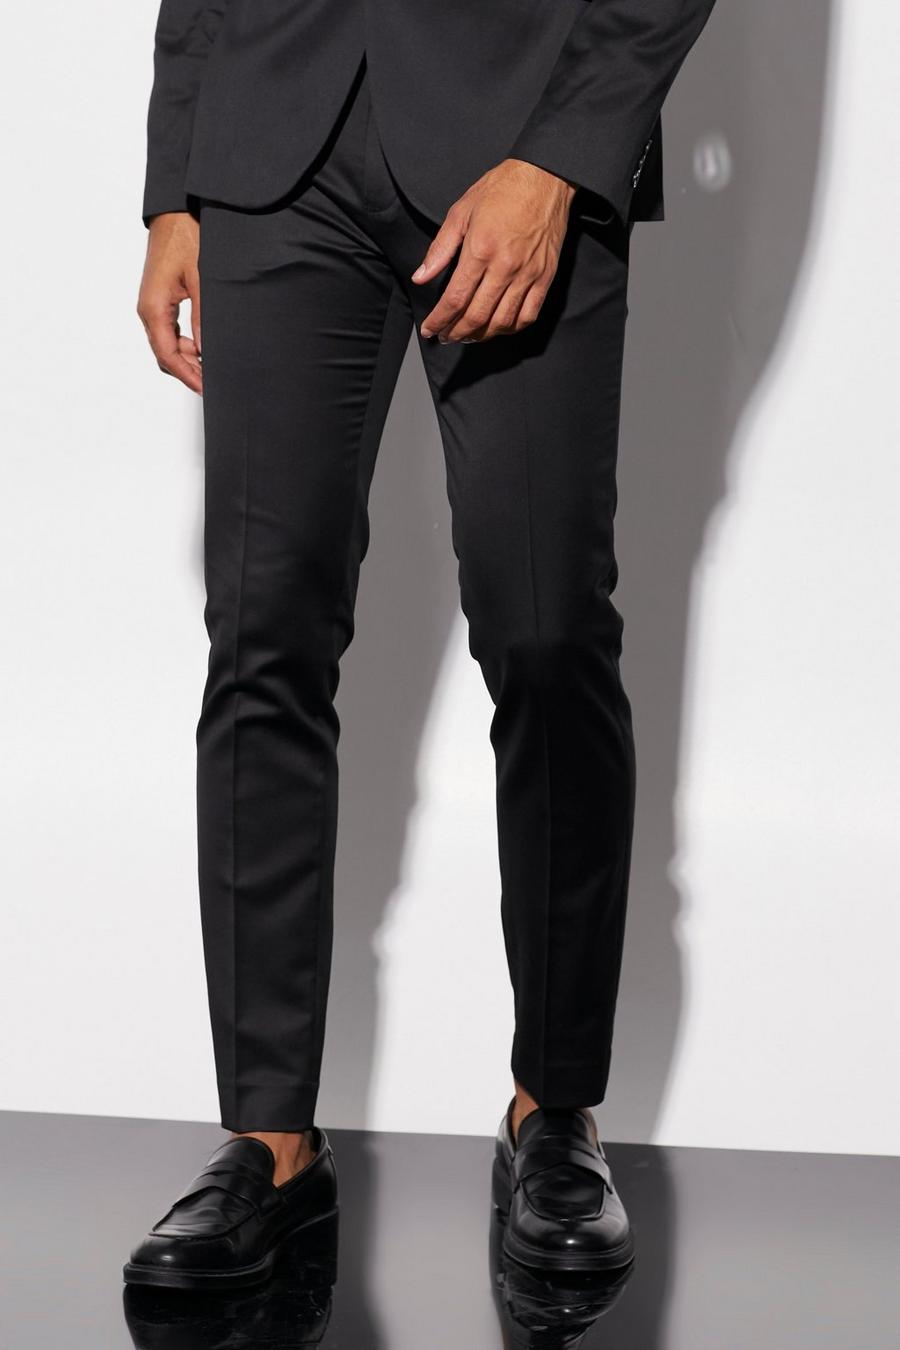 שחור nero מכנסי חליפה מסאטן בגזרת סקיני